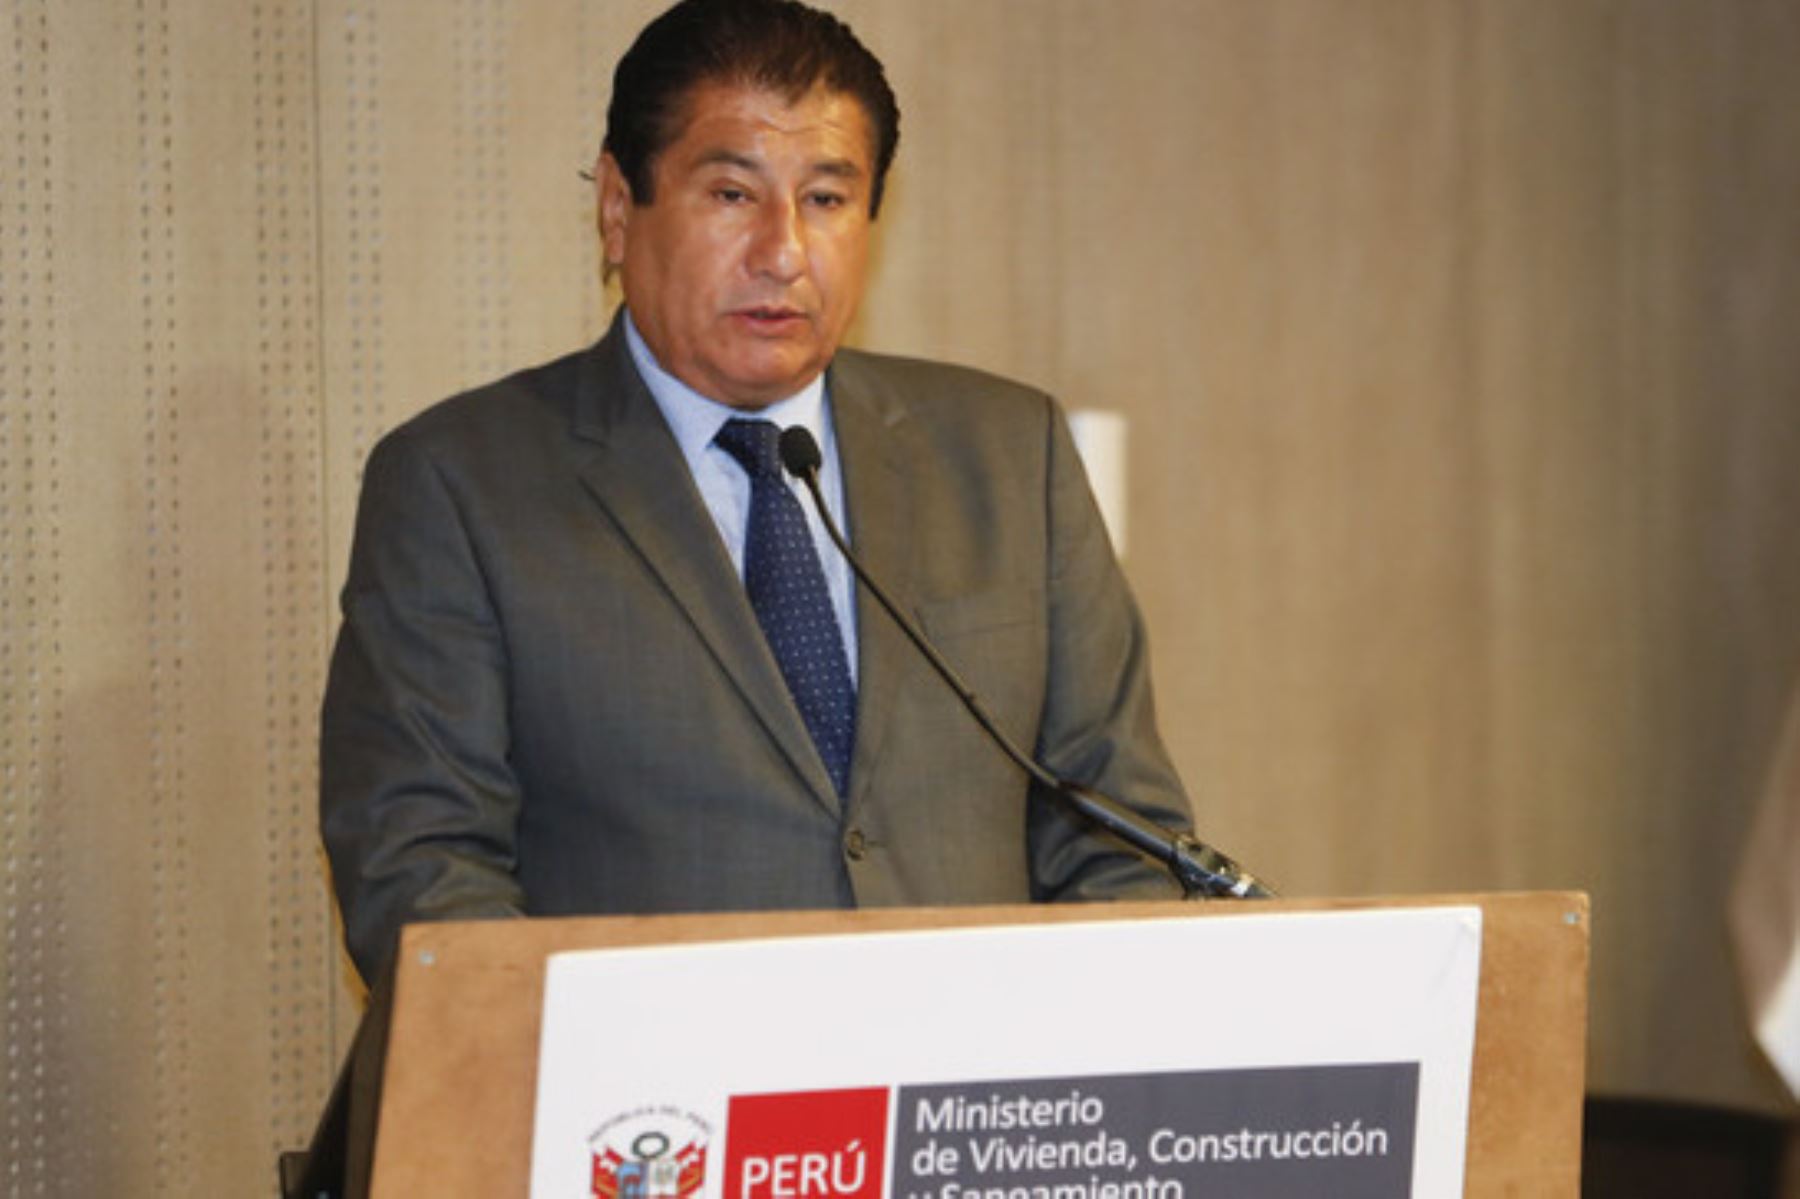 El ministro de Vivienda, Construcción y Saneamiento, Rodolfo Yáñez, afirmó que las puertas del sector están abiertas para todas las autoridades.